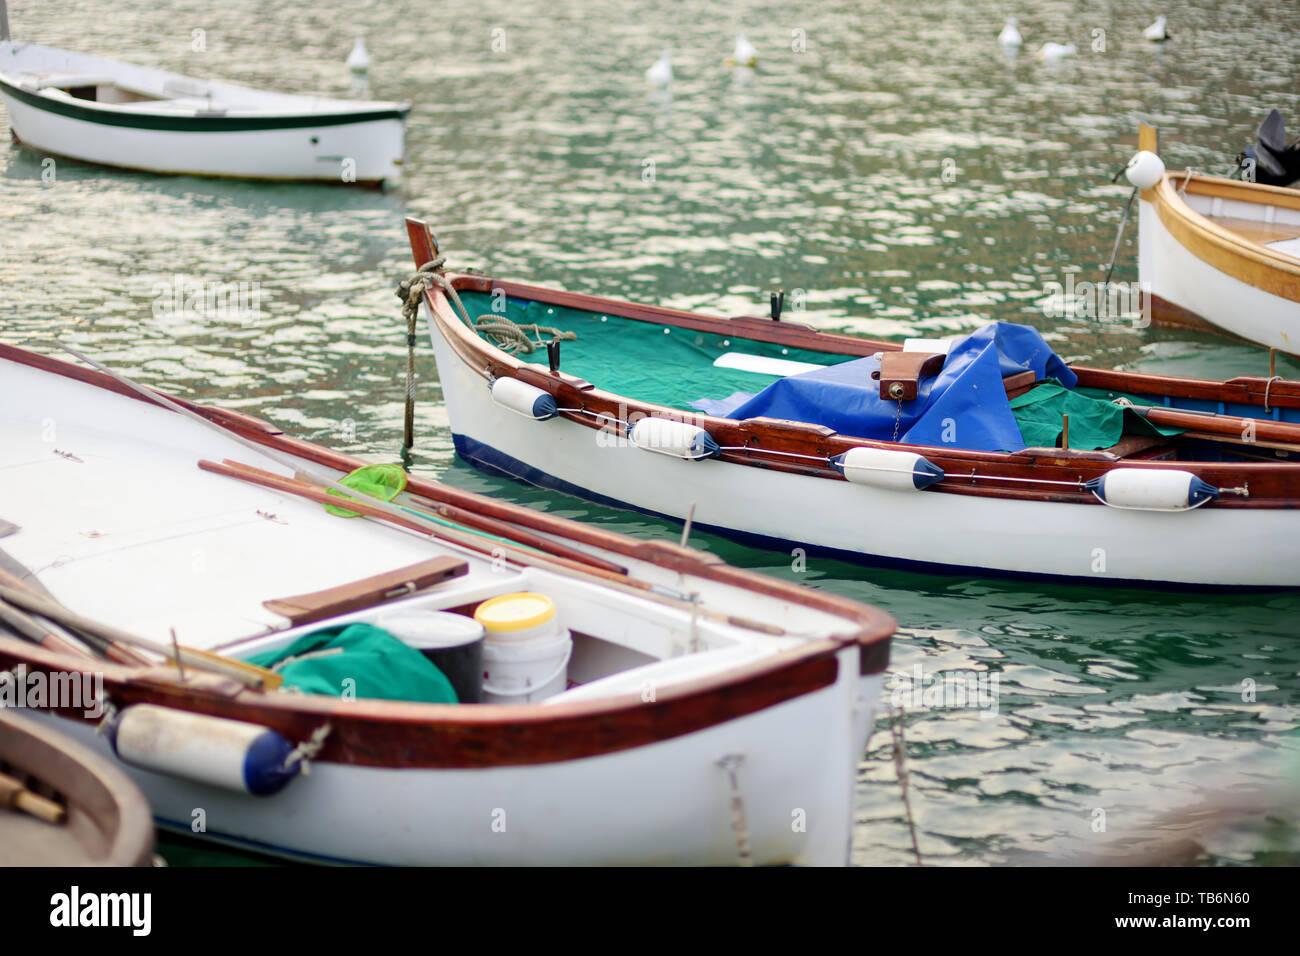 Piccoli yacht e barche da pesca a marina di Porto Venere town, situato in provincia di La Spezia in Liguria, parte della Riviera Italiana, Italia. Foto Stock